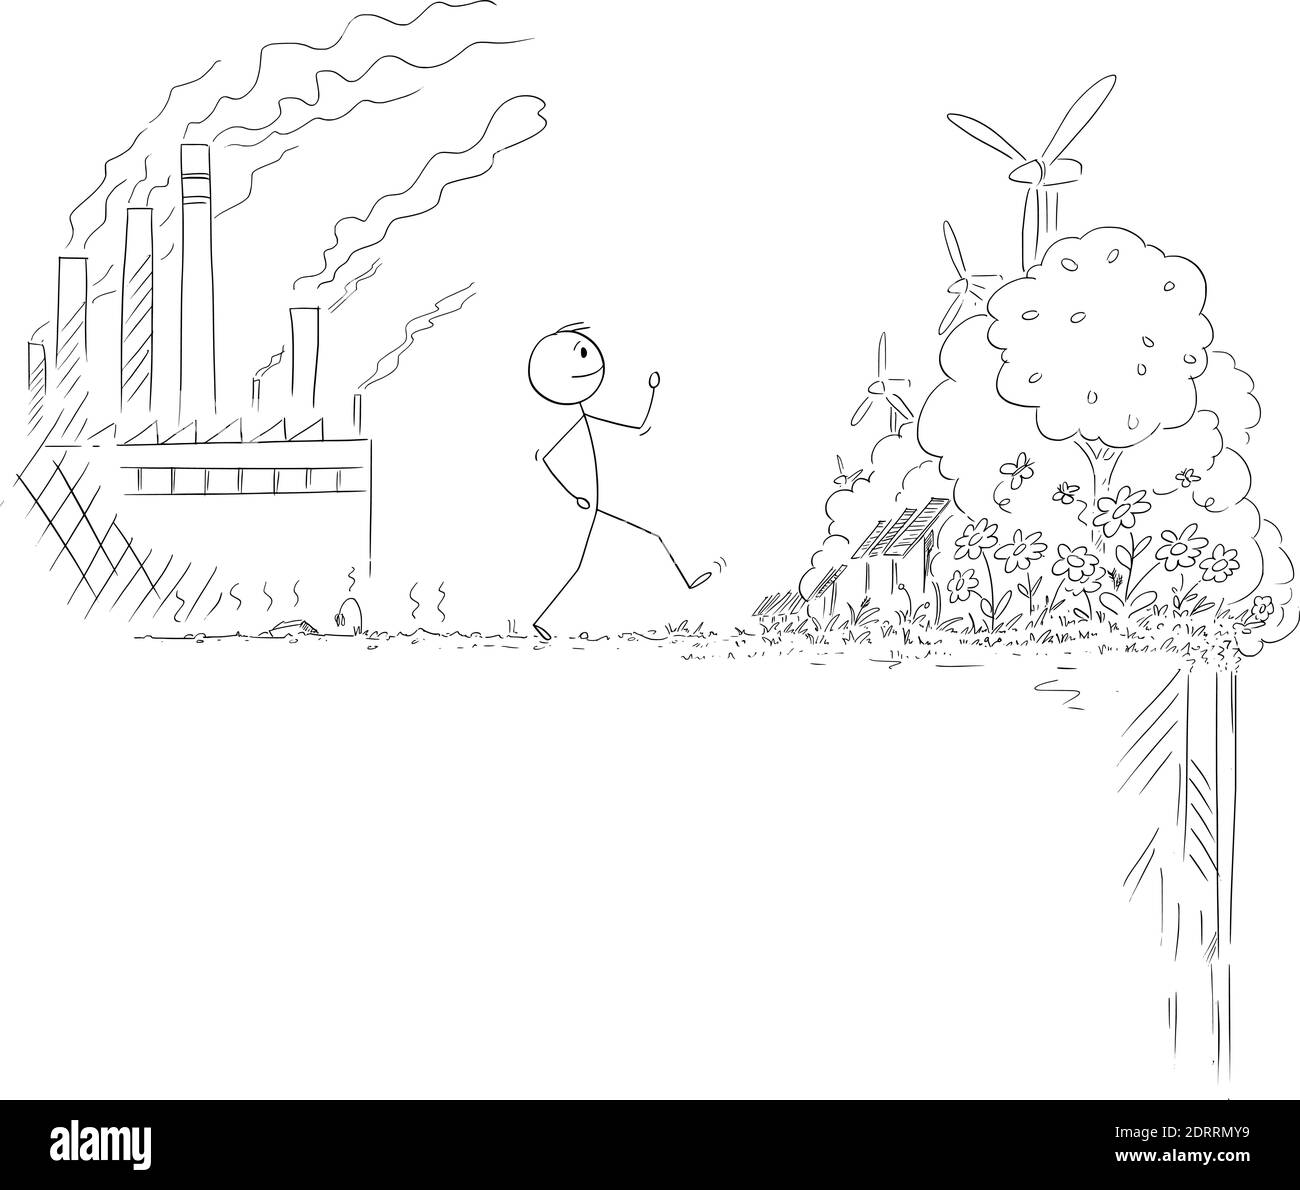 Vektor-Cartoon-Stick Figur Abbildung des Menschen zu Fuß von Ort mit der Natur durch Verschmutzung von Schwerindustrie und Kohlekraftwerken zerstört schöne Zukunft der erneuerbaren Ressourcen der Energie, aber es ist das Risiko dahinter. Stock Vektor